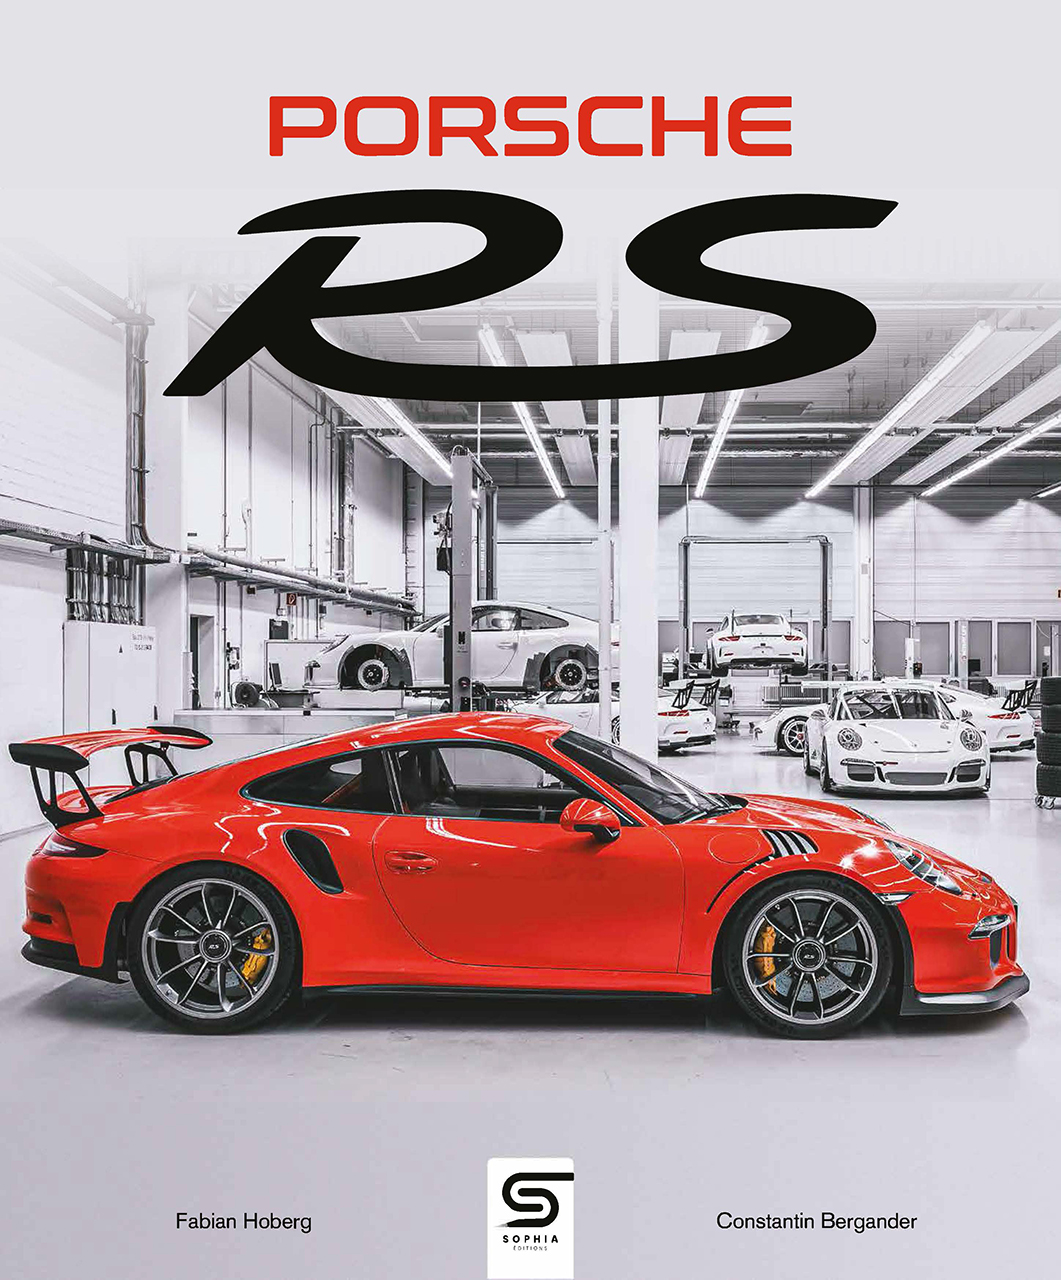 Porsche rs